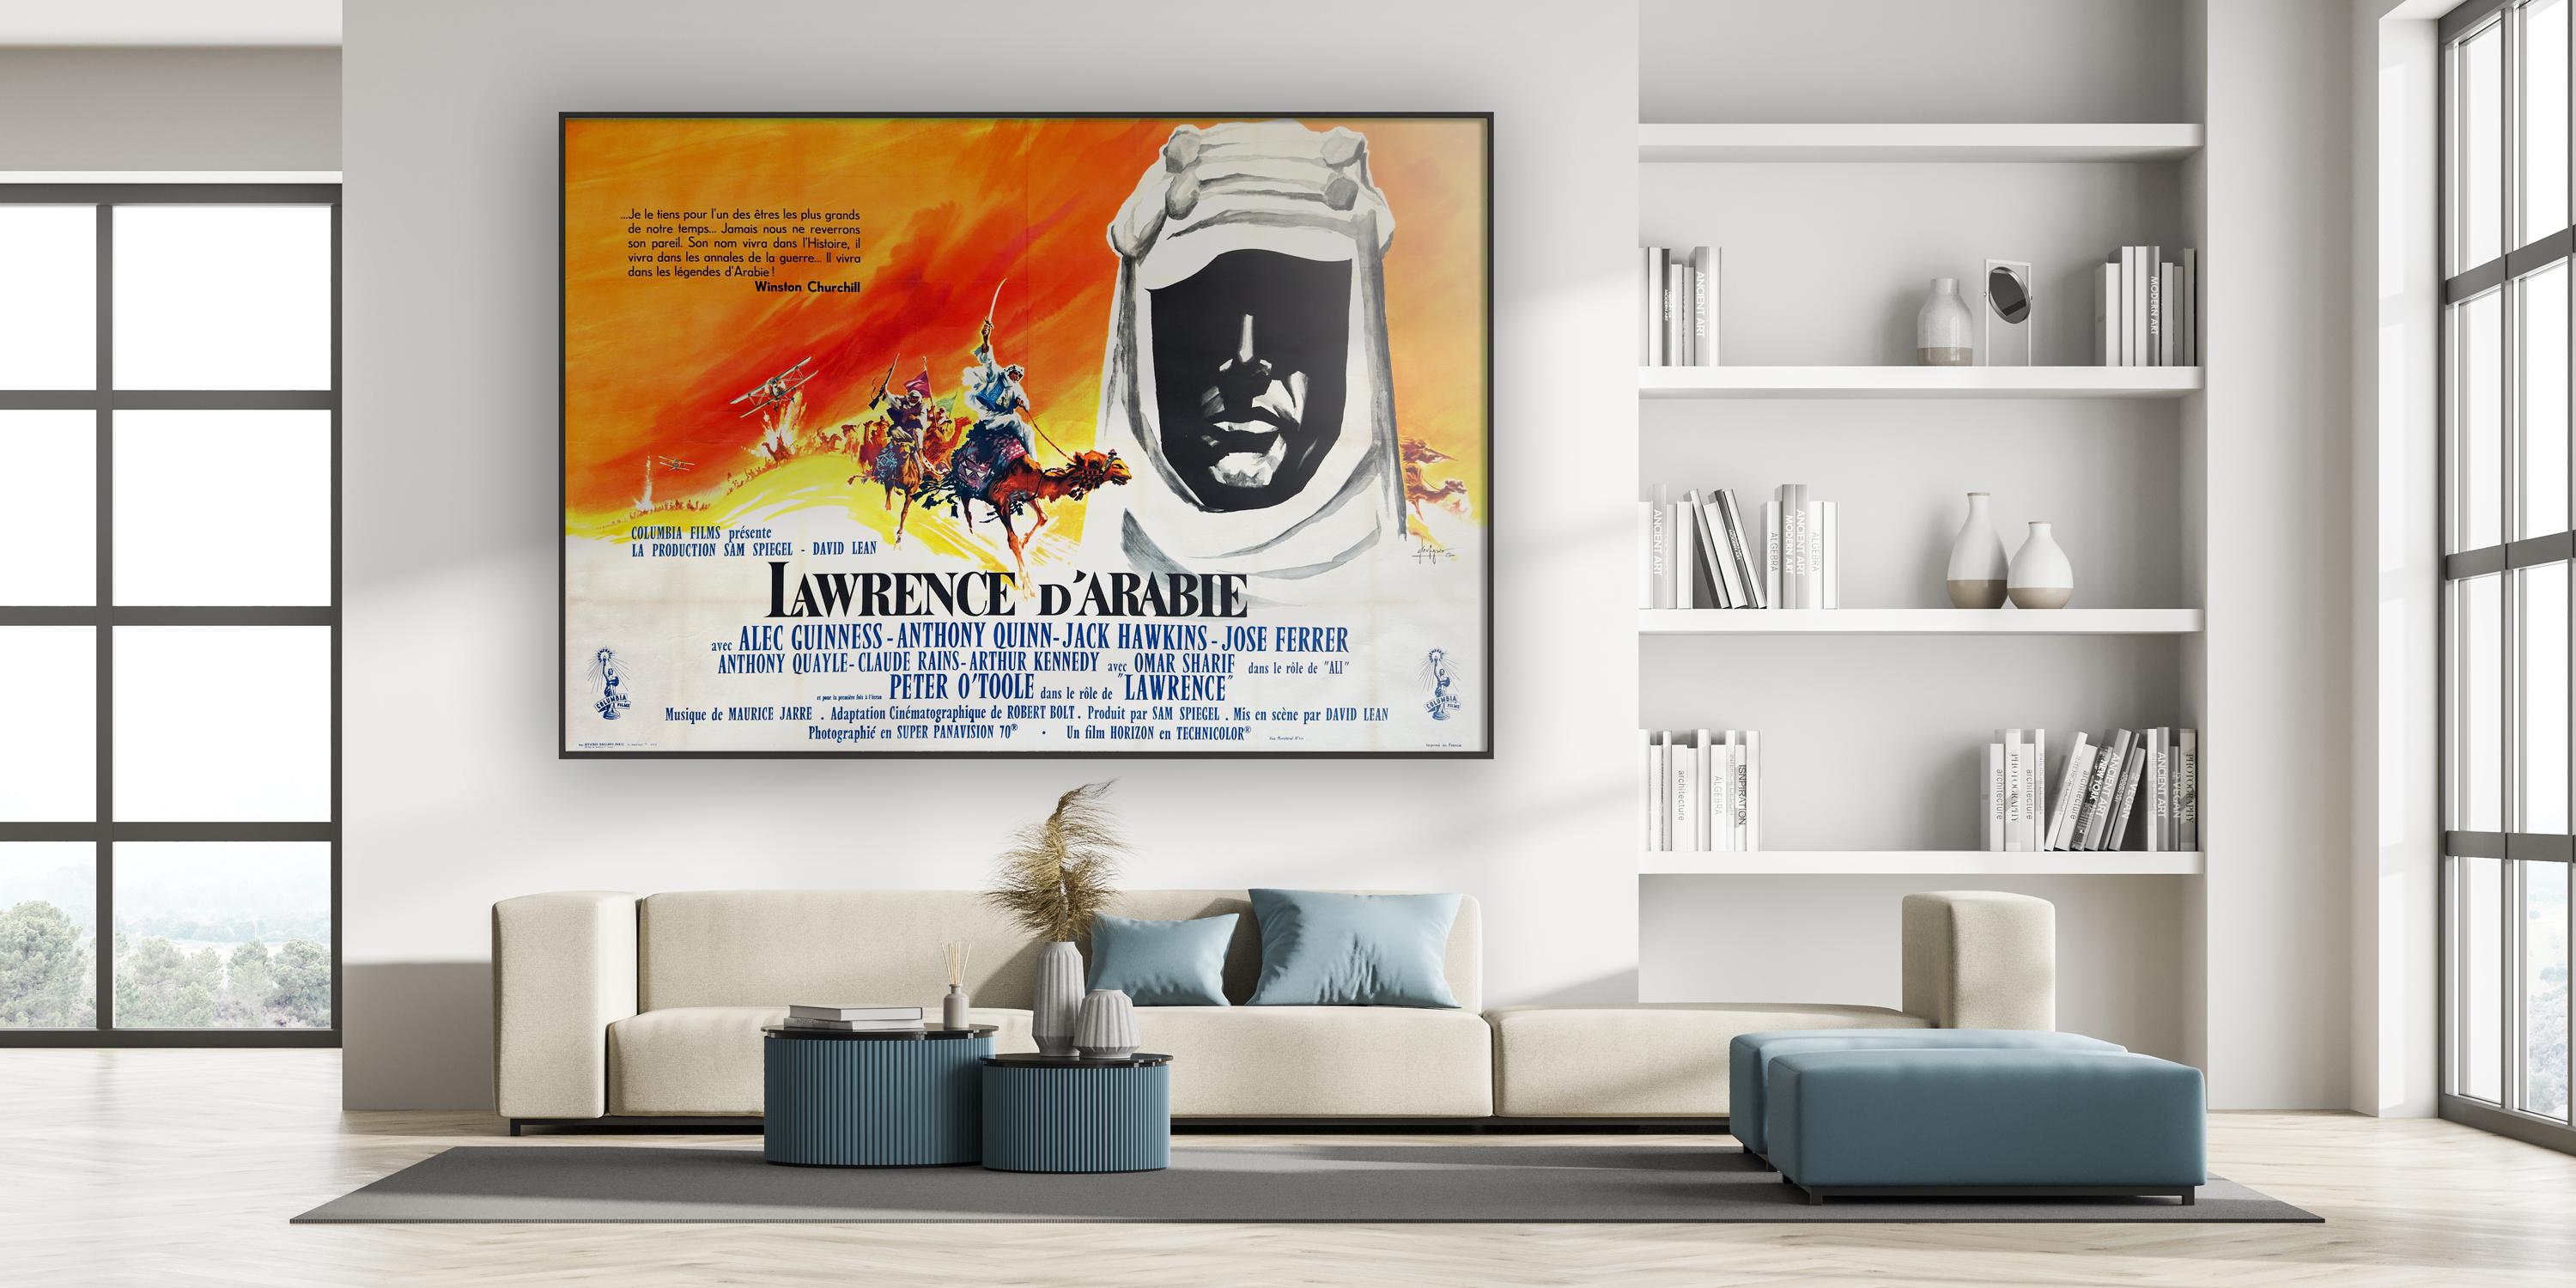 Nous adorons cette affiche du film français Lawrence d'Arabie, sorti en 1962.  Le design de Georges Kerfyser est spectaculaire à l'échelle de ce Double Grande français. Une affiche vraiment étonnante et très rare.

Lawrence d'Arabie, sans doute